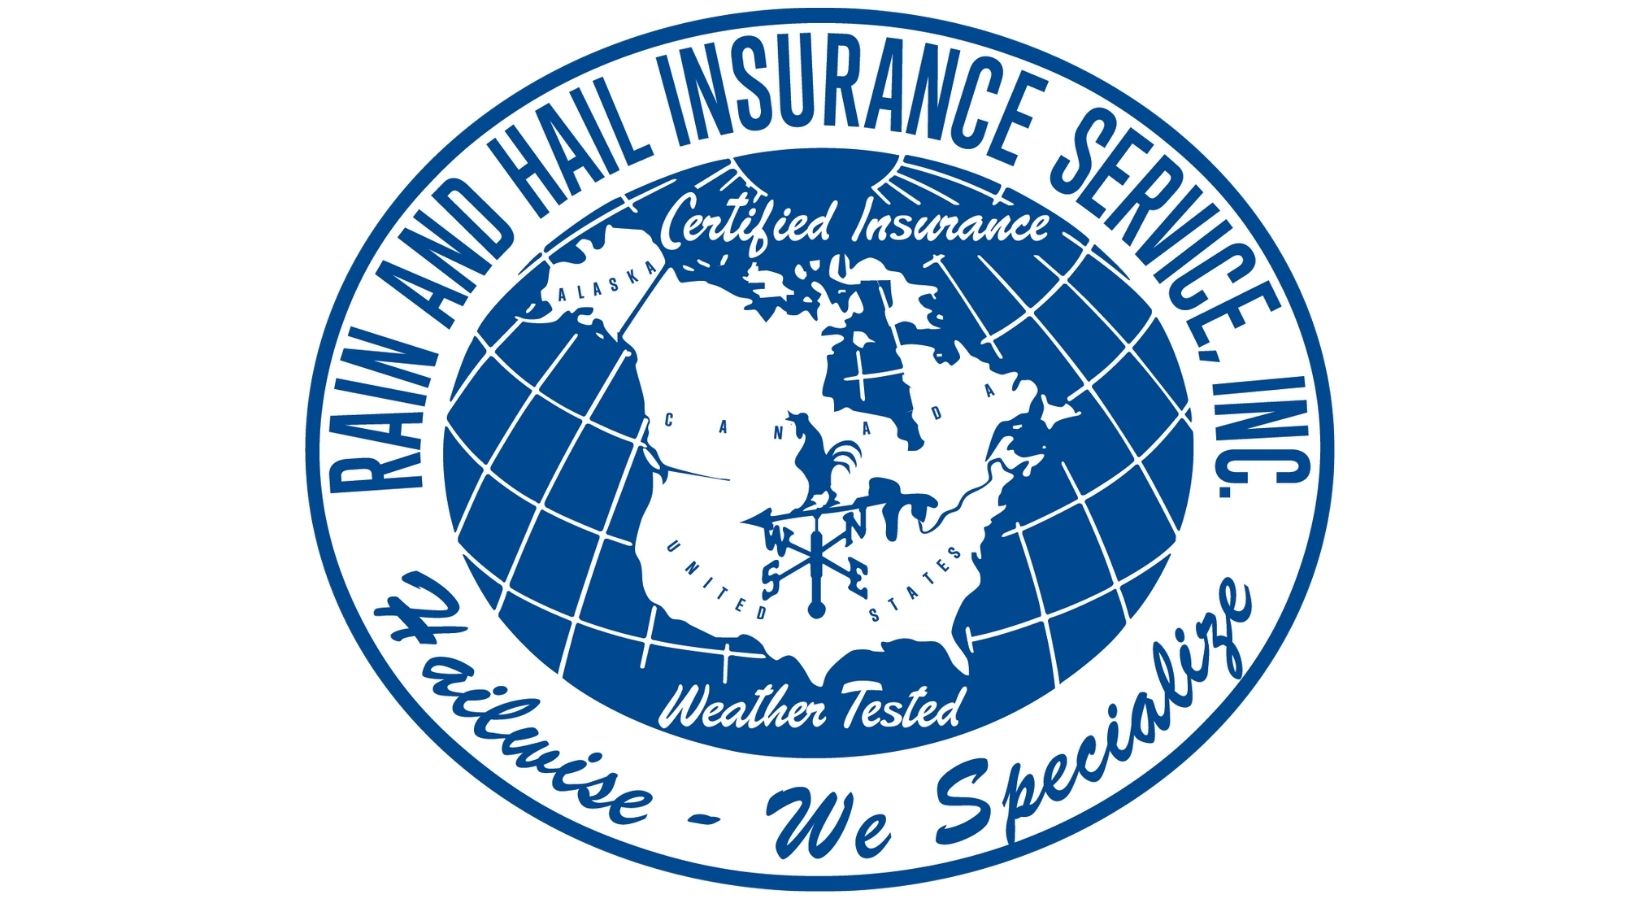 Rain and hail insurance logo